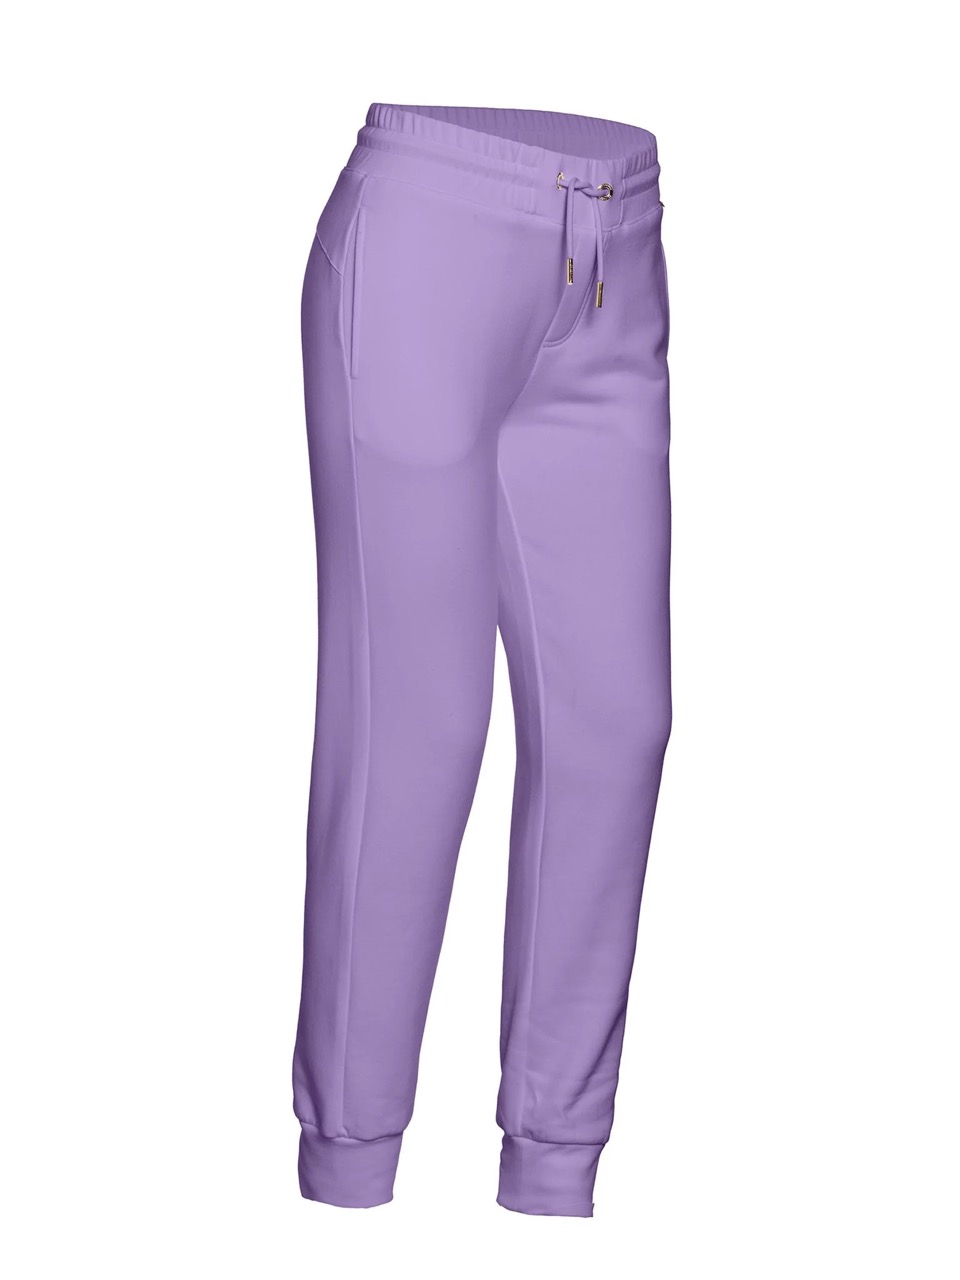 Violet dames broek Goldbergh - Ease pants